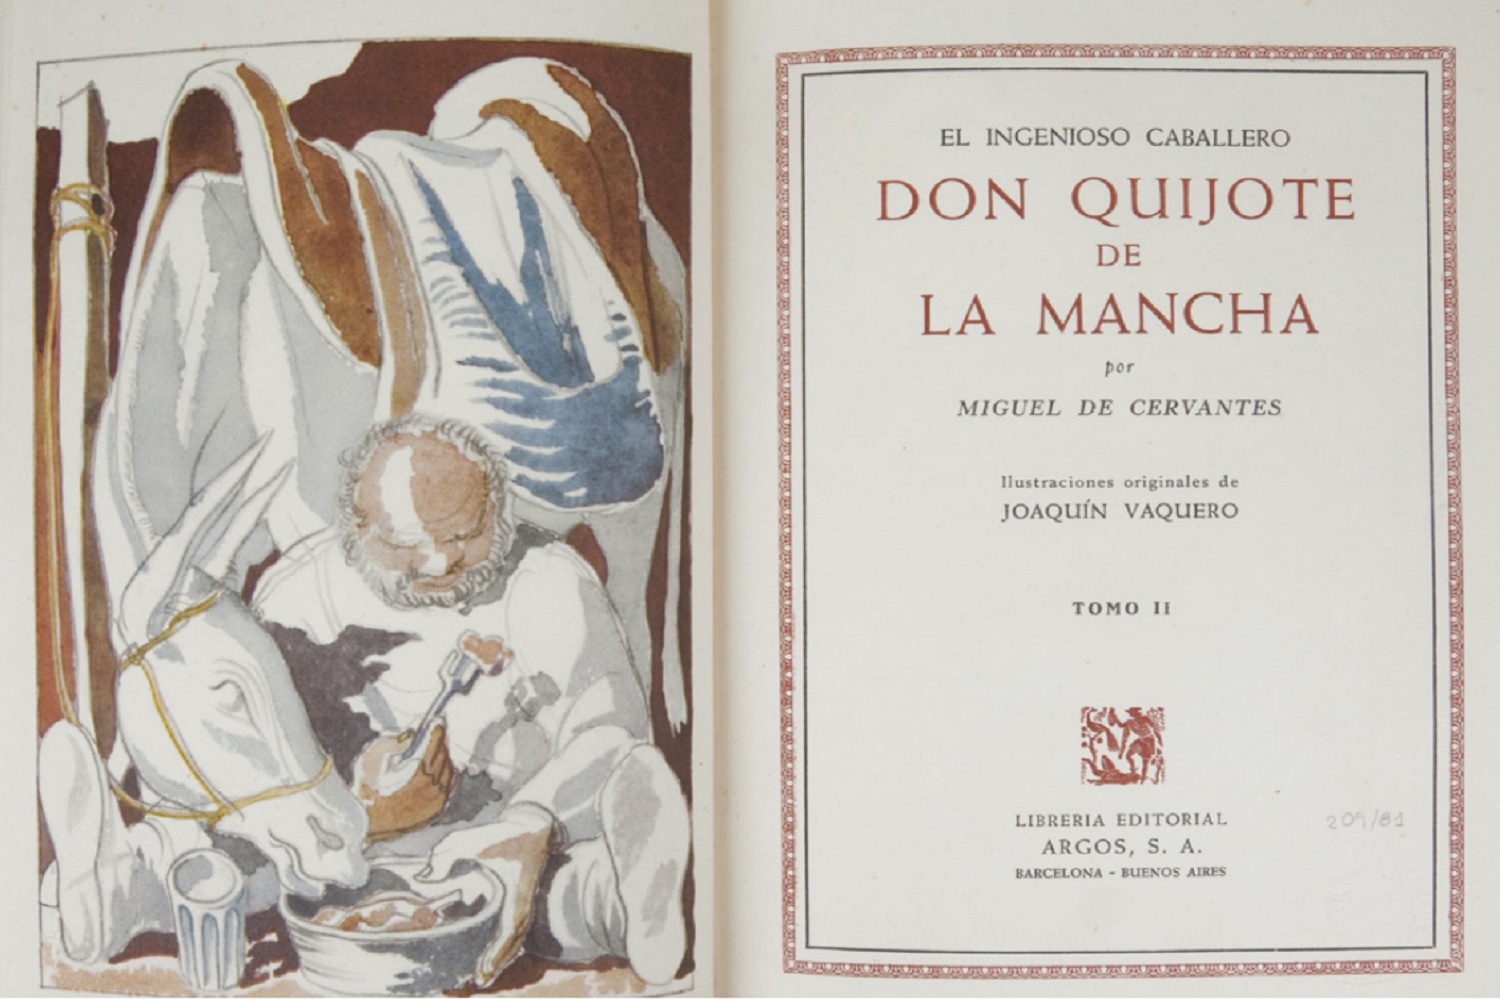 Exhibition "Other Cervantine editions", in Alcalá de Henares